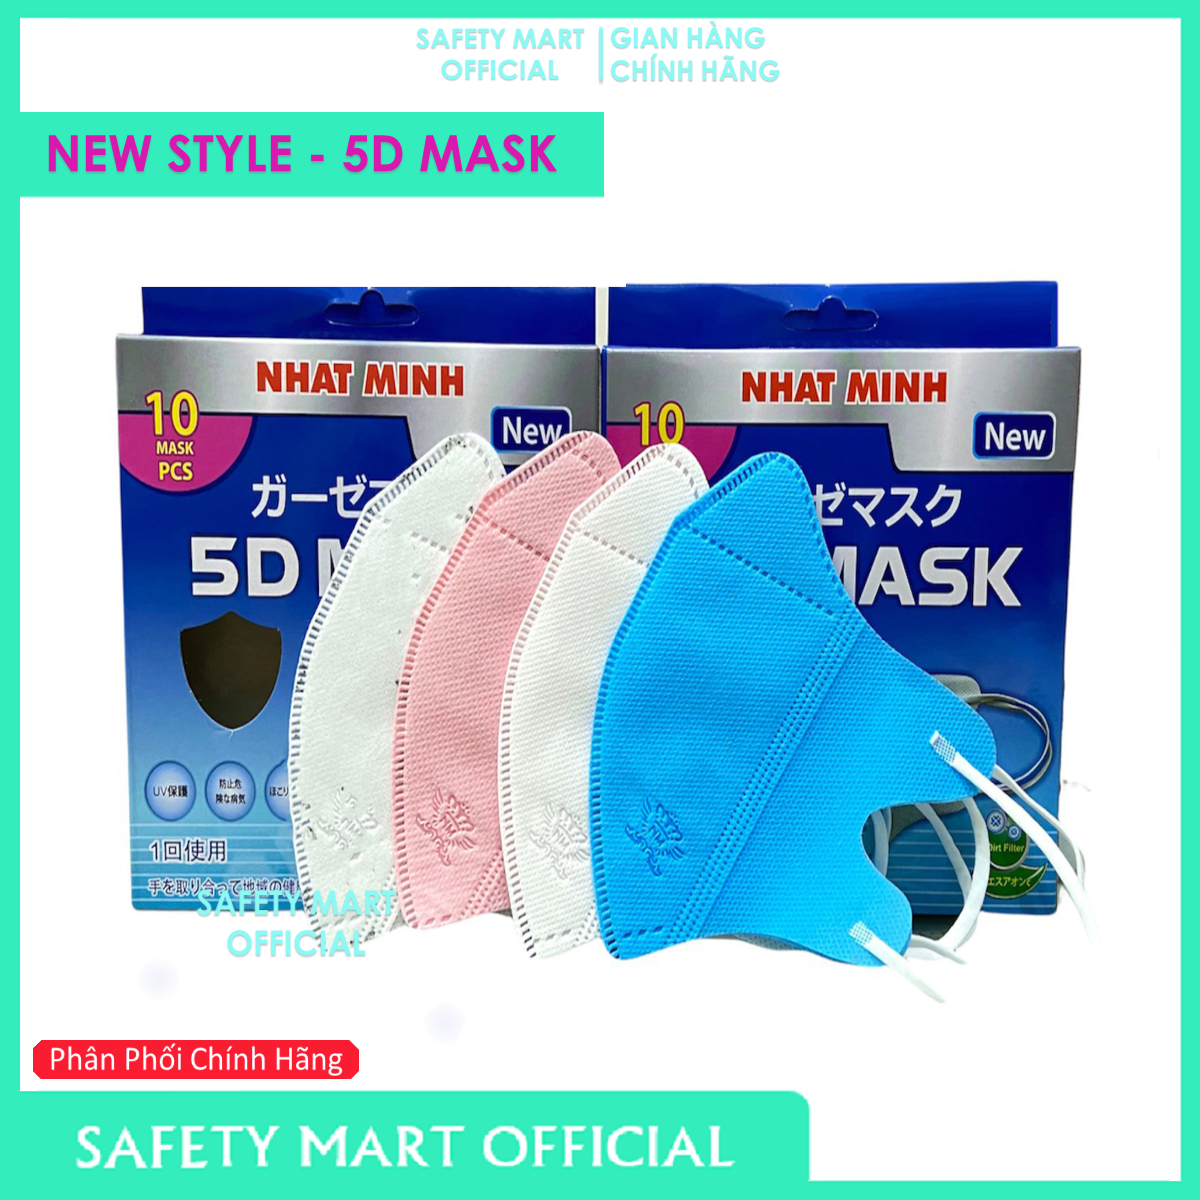 [BÁN CHẠY] Combo 100 chiếc / 200 chiếc Khẩu trang 5D Mask, Khẩu trang 5d 100 cái, Khẩu trang 5d 100 cái công nghệ Nhật Bản chính hãng, khau trang 5d mask 100 chiec - Hàng Chính Hãng Safety Mart Official